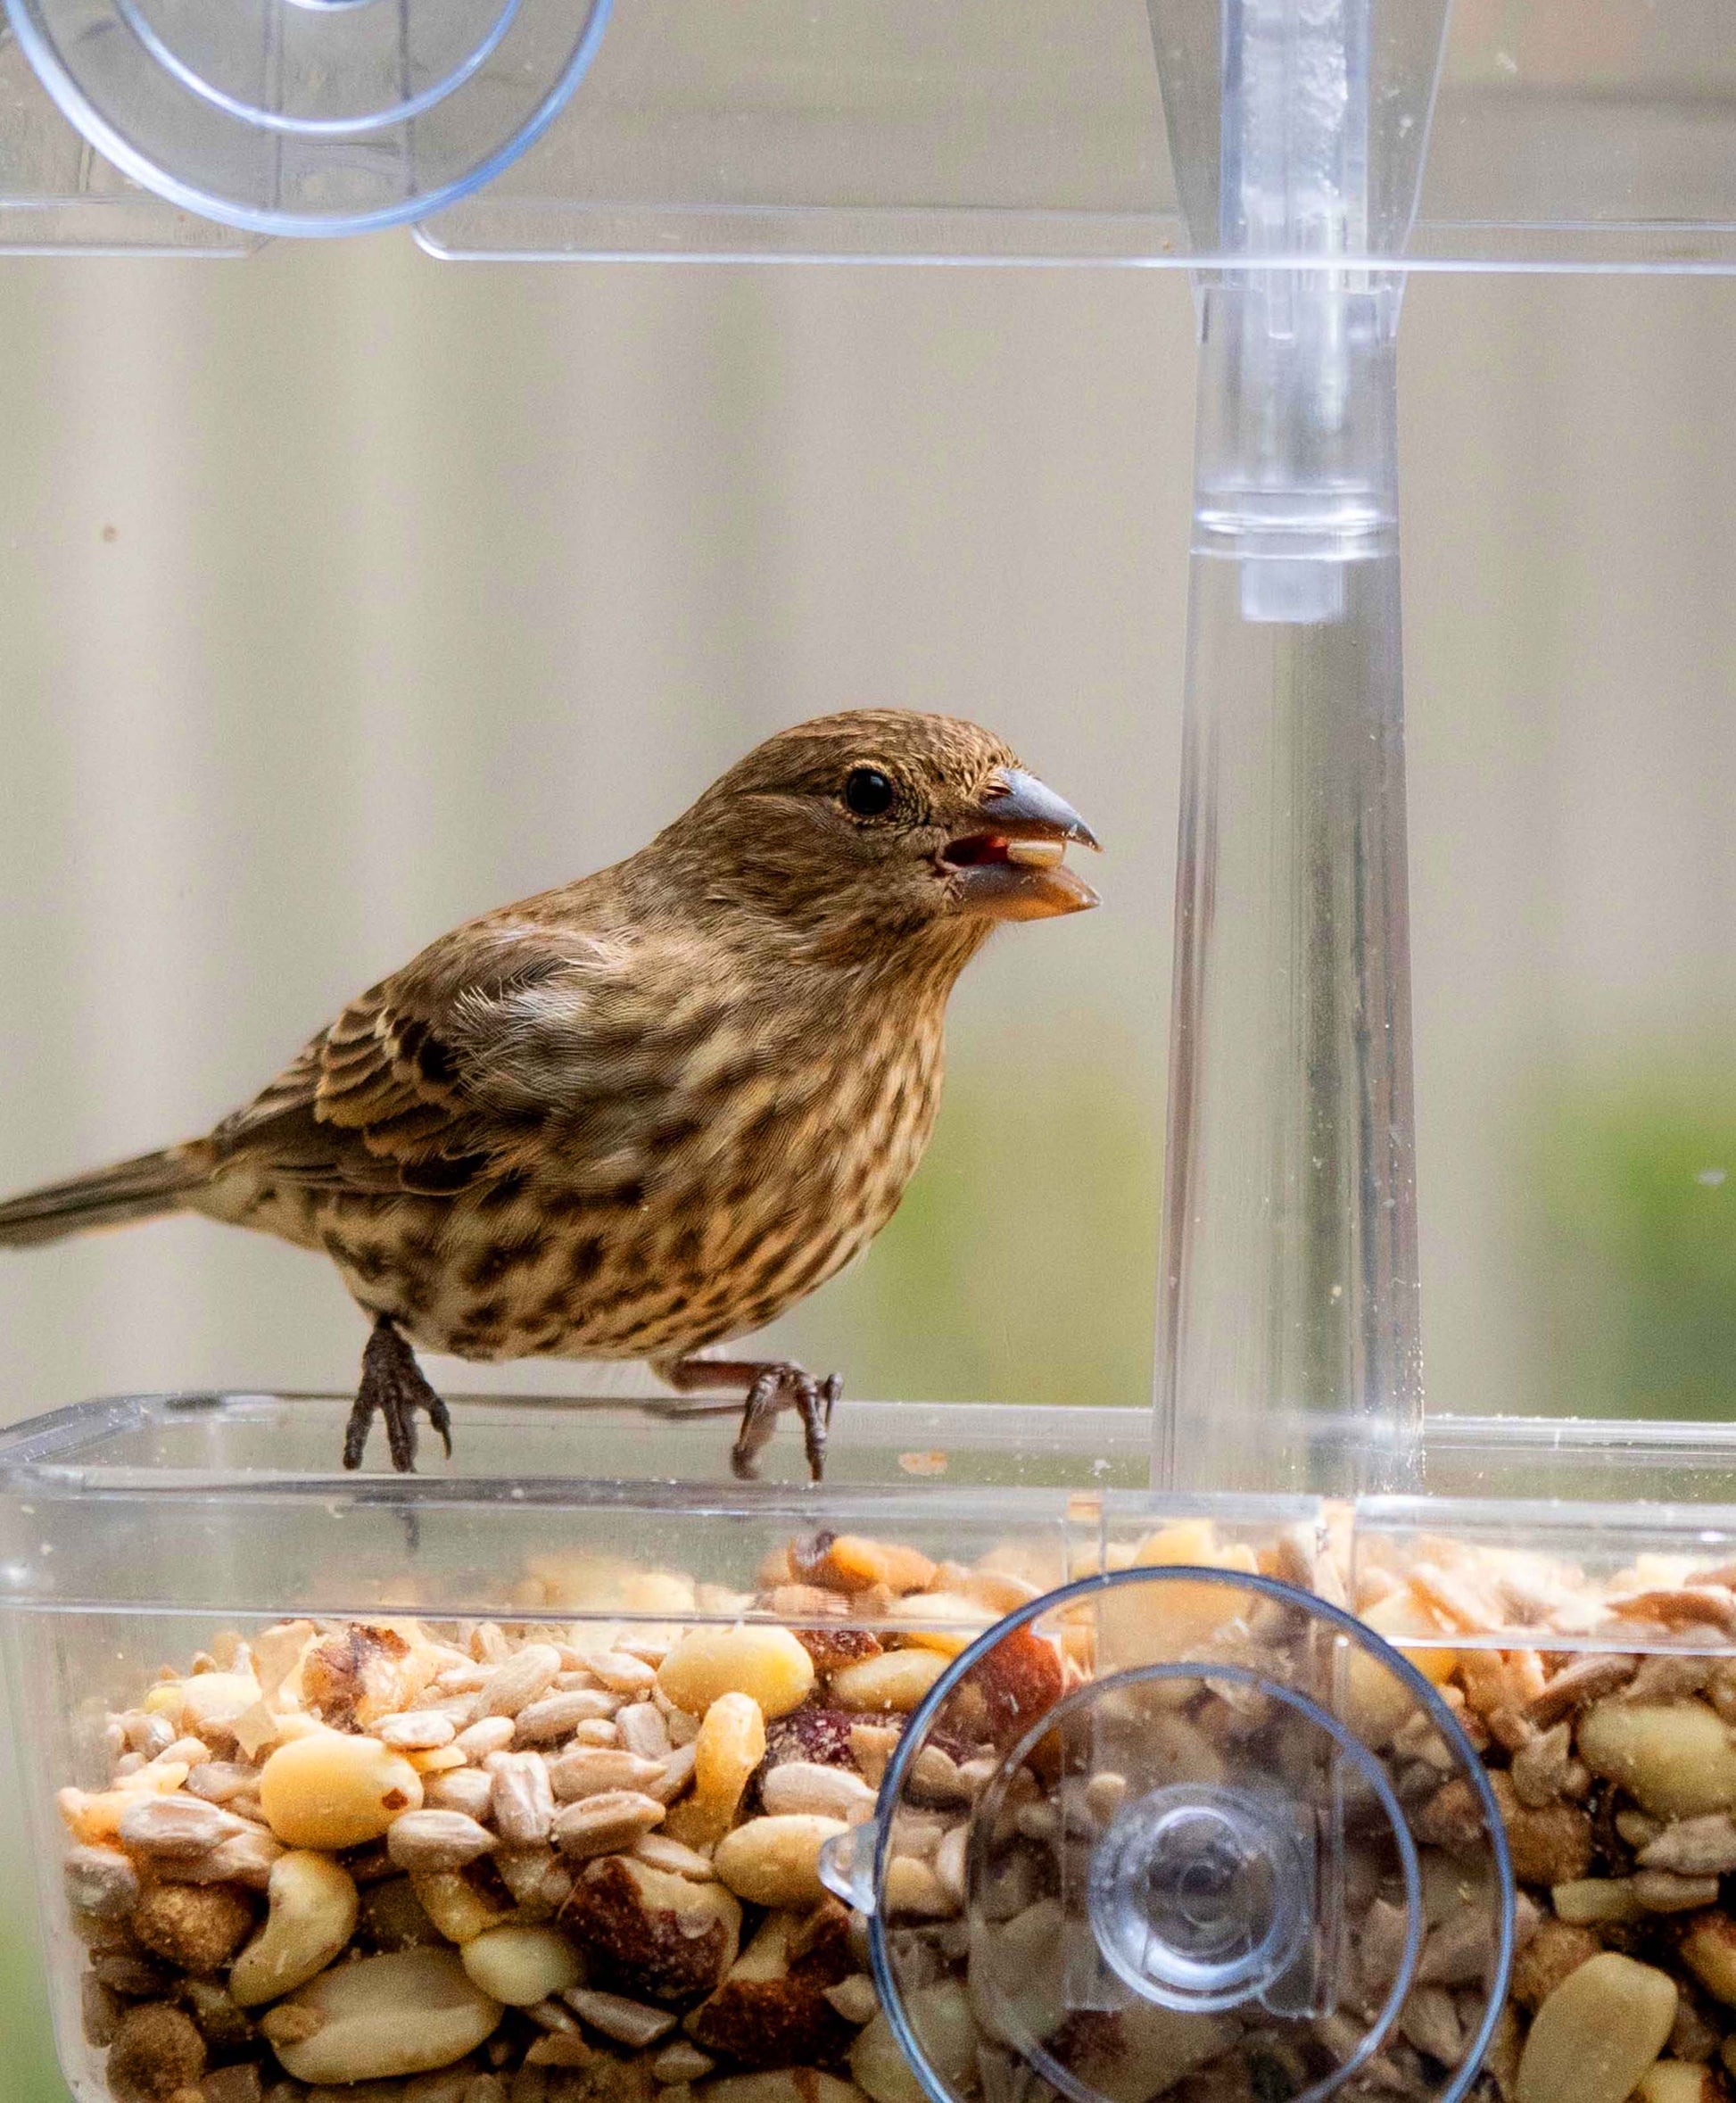 Mangeoire à Oiseaux Transparente,Mangeoire à fenêtre pour Oiseaux